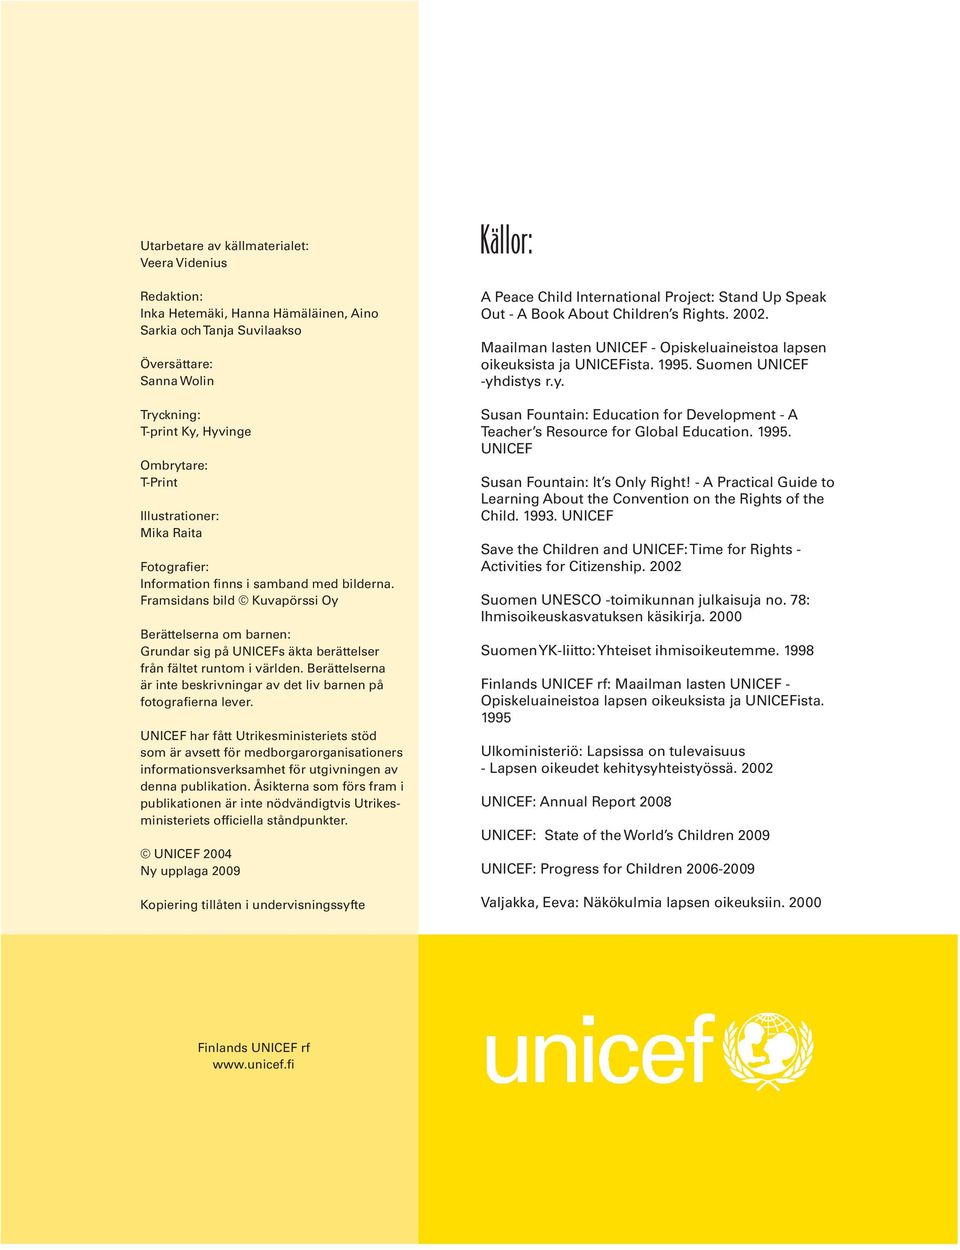 Framsidans bild Kuvapörssi Oy Berättelserna om barnen: Grundar sig på UNICEFs äkta berättelser från fältet runtom i världen.